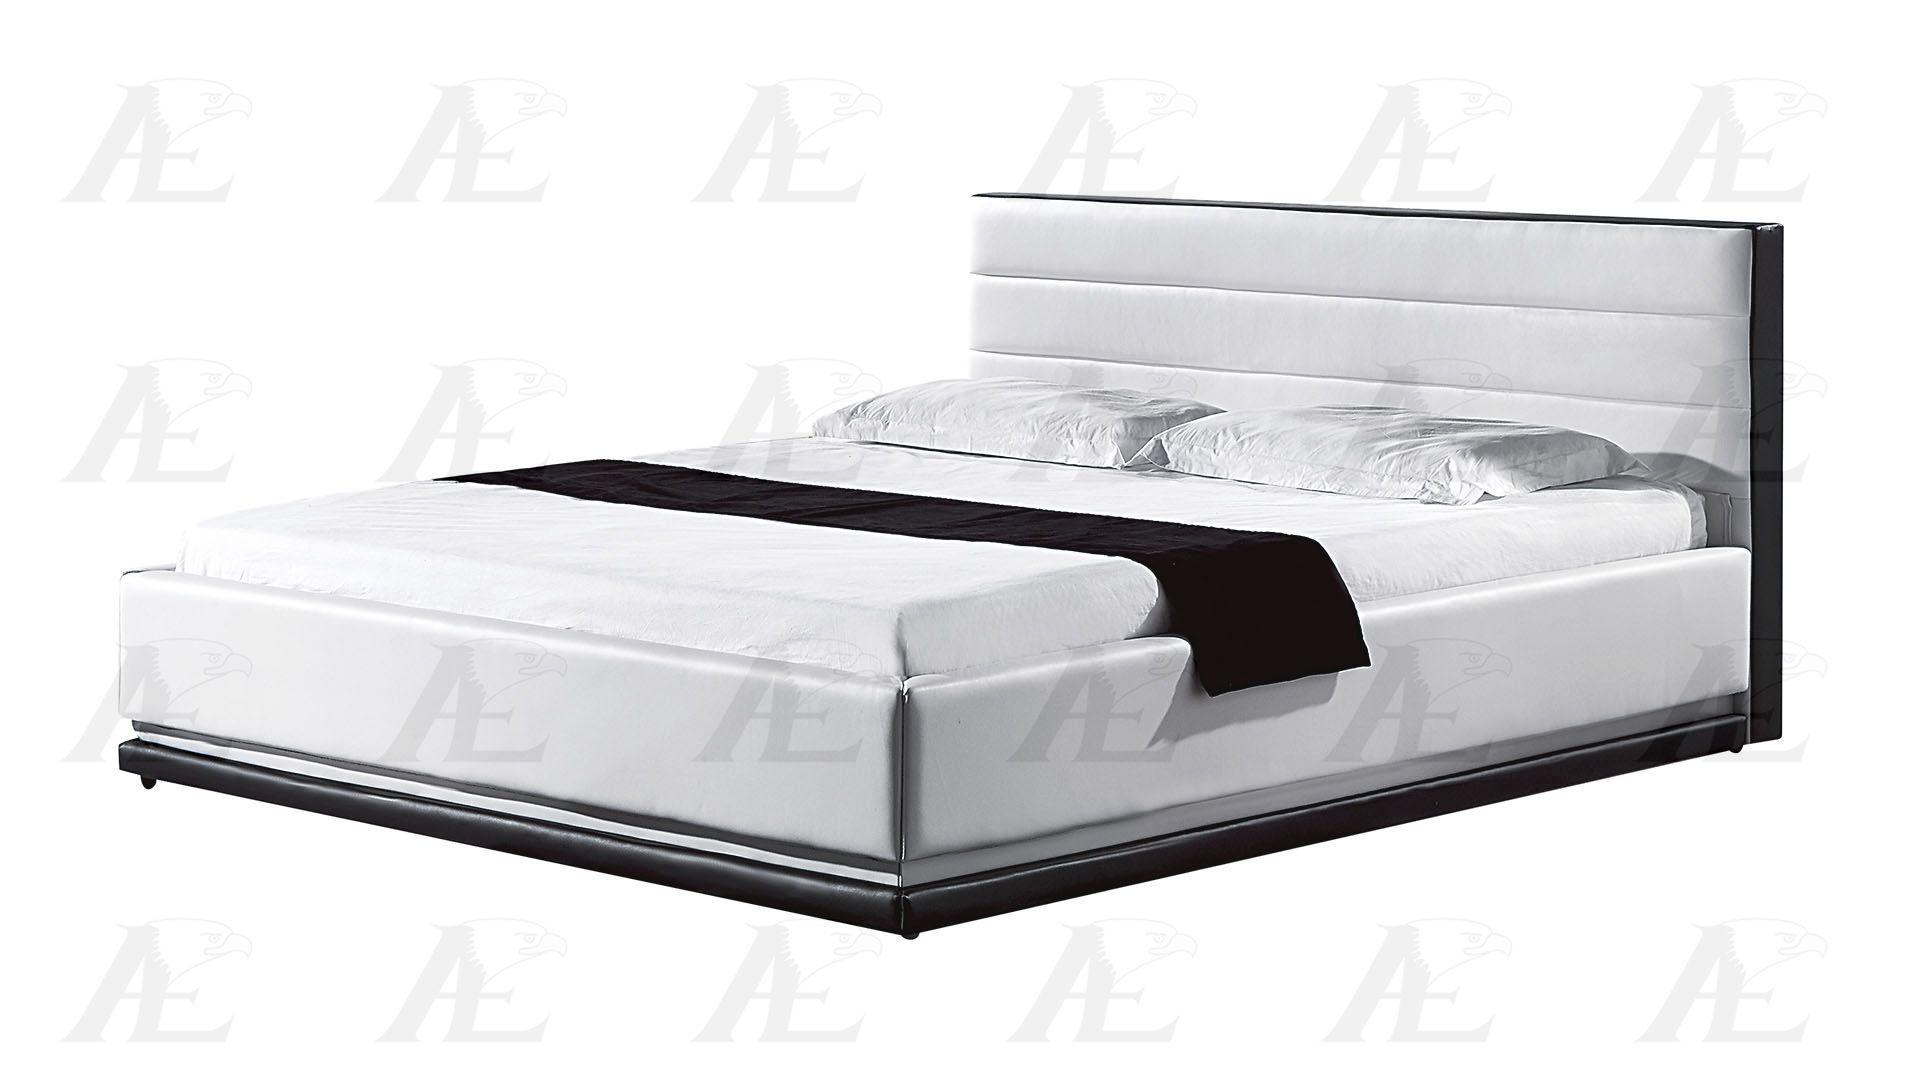 

                    
American Eagle Furniture B-D022-IV.BK Platform Bed Ivory/Black PU Purchase 
